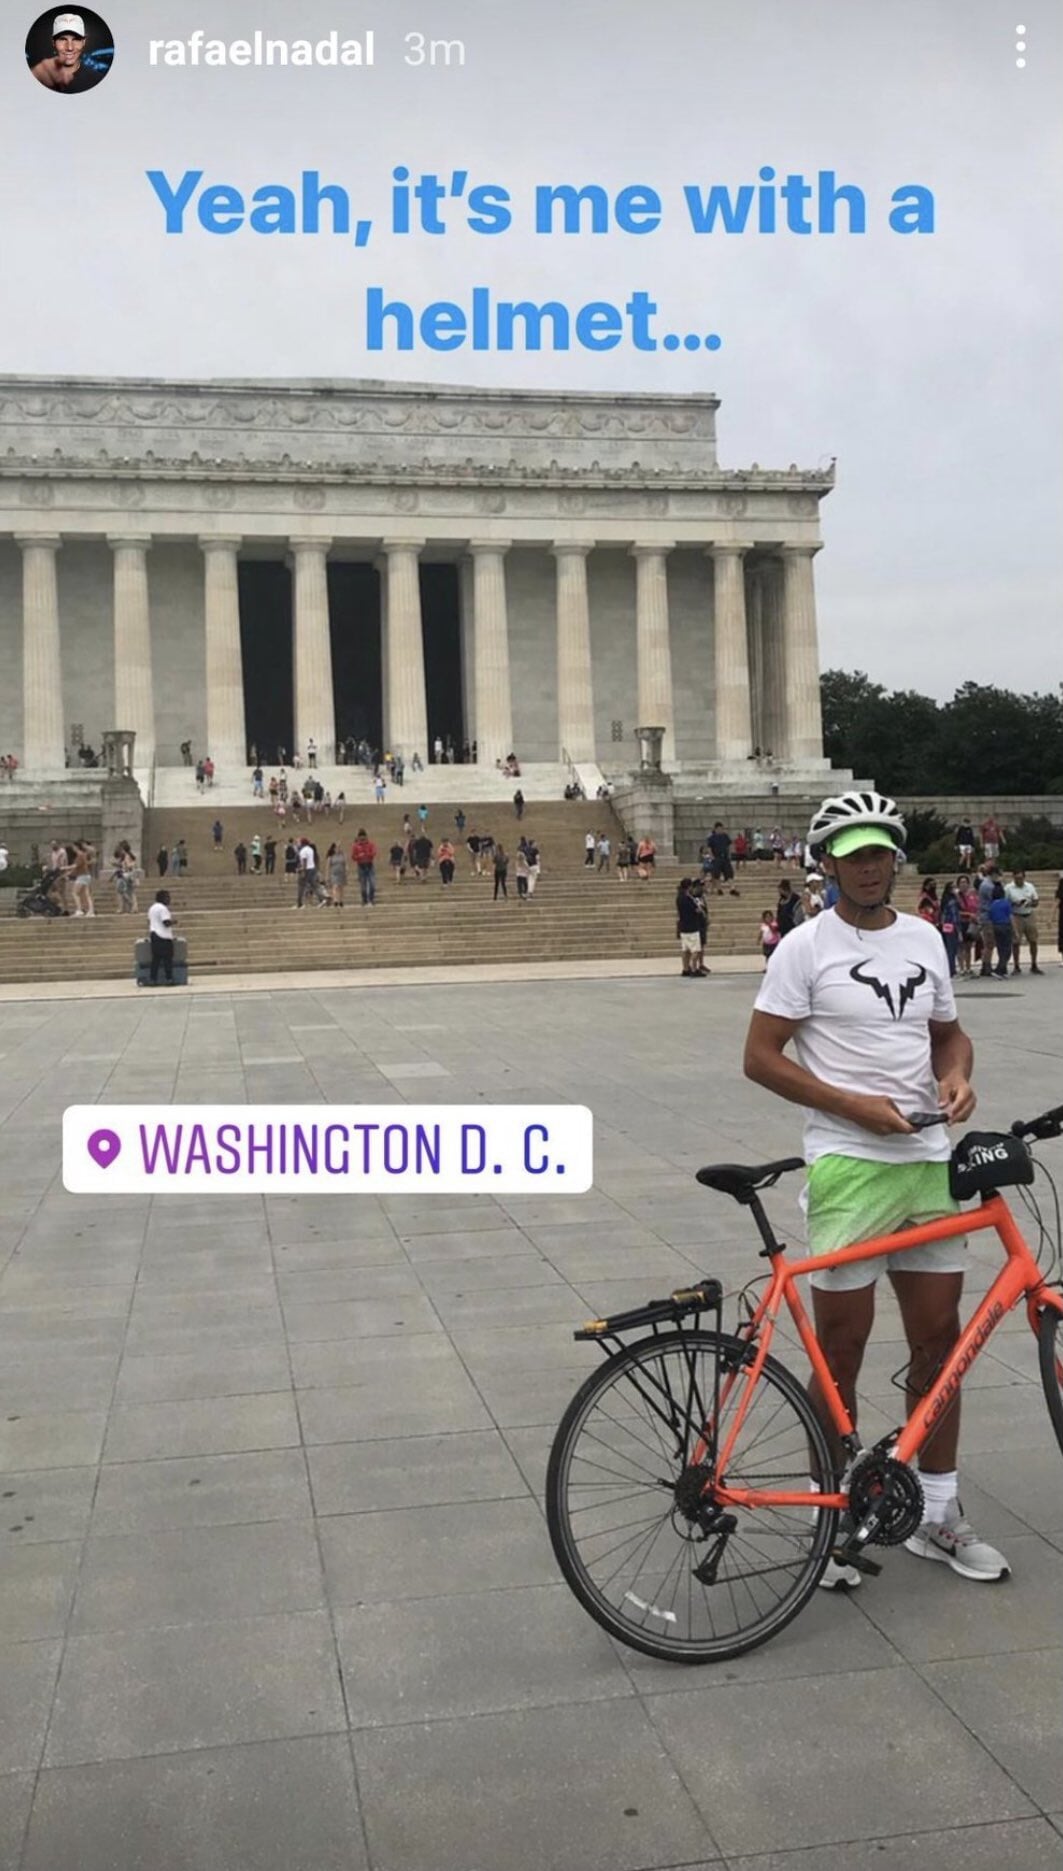 "Это я в шлеме". Рафаэль Надаль поделился фото с прогулки по Вашингтону — Новости тенниса на GoTennis.ru